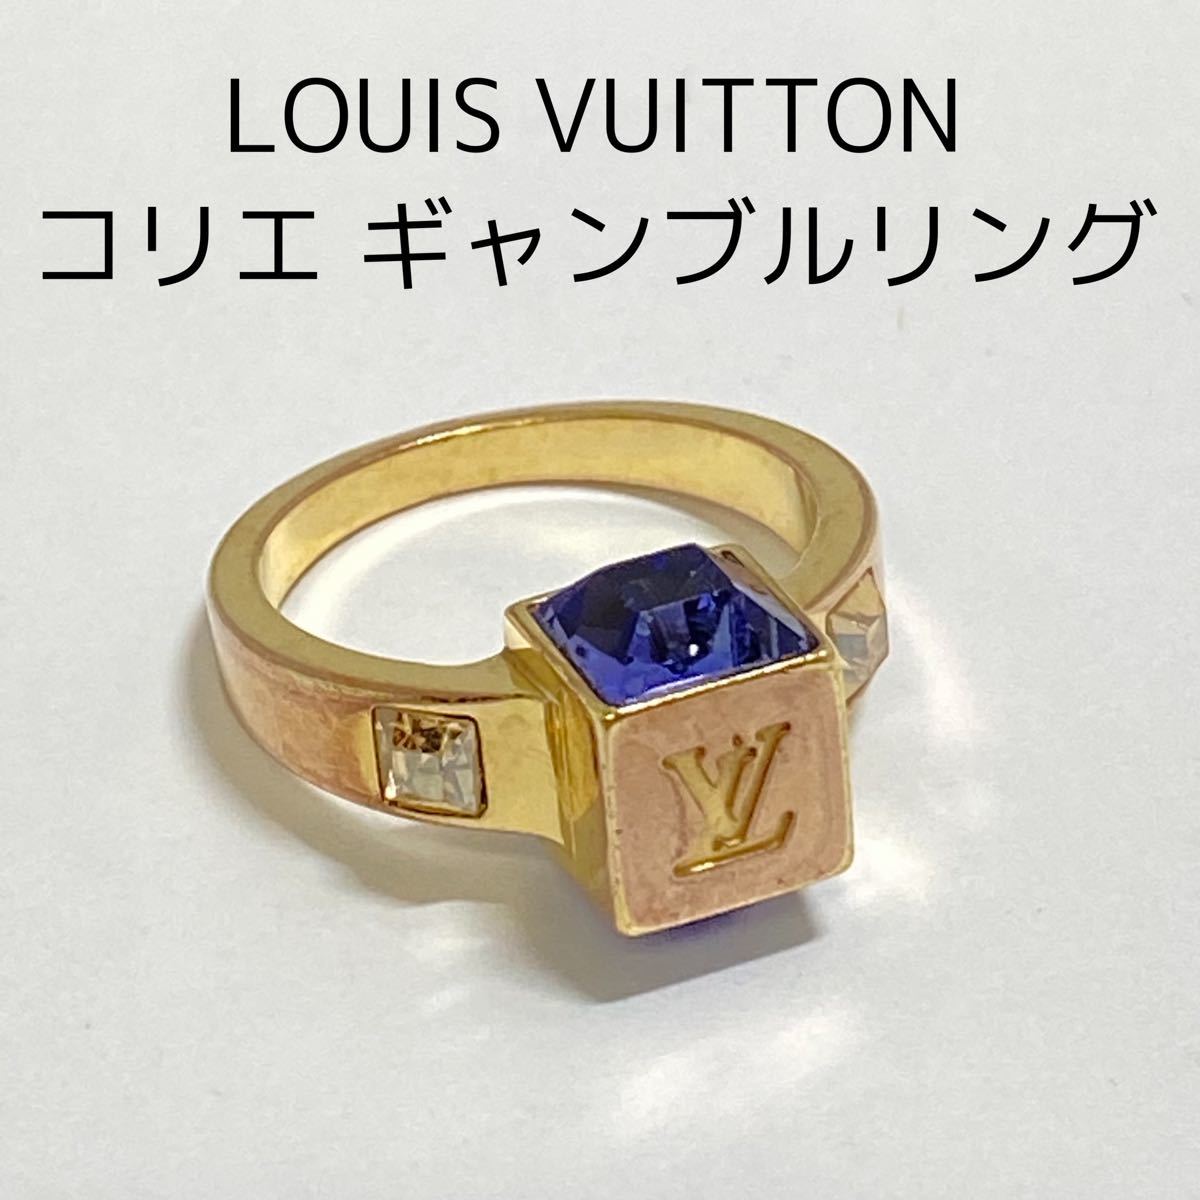 注目ショップ・ブランドのギフト Louis Vuitton ギャンブルリング 